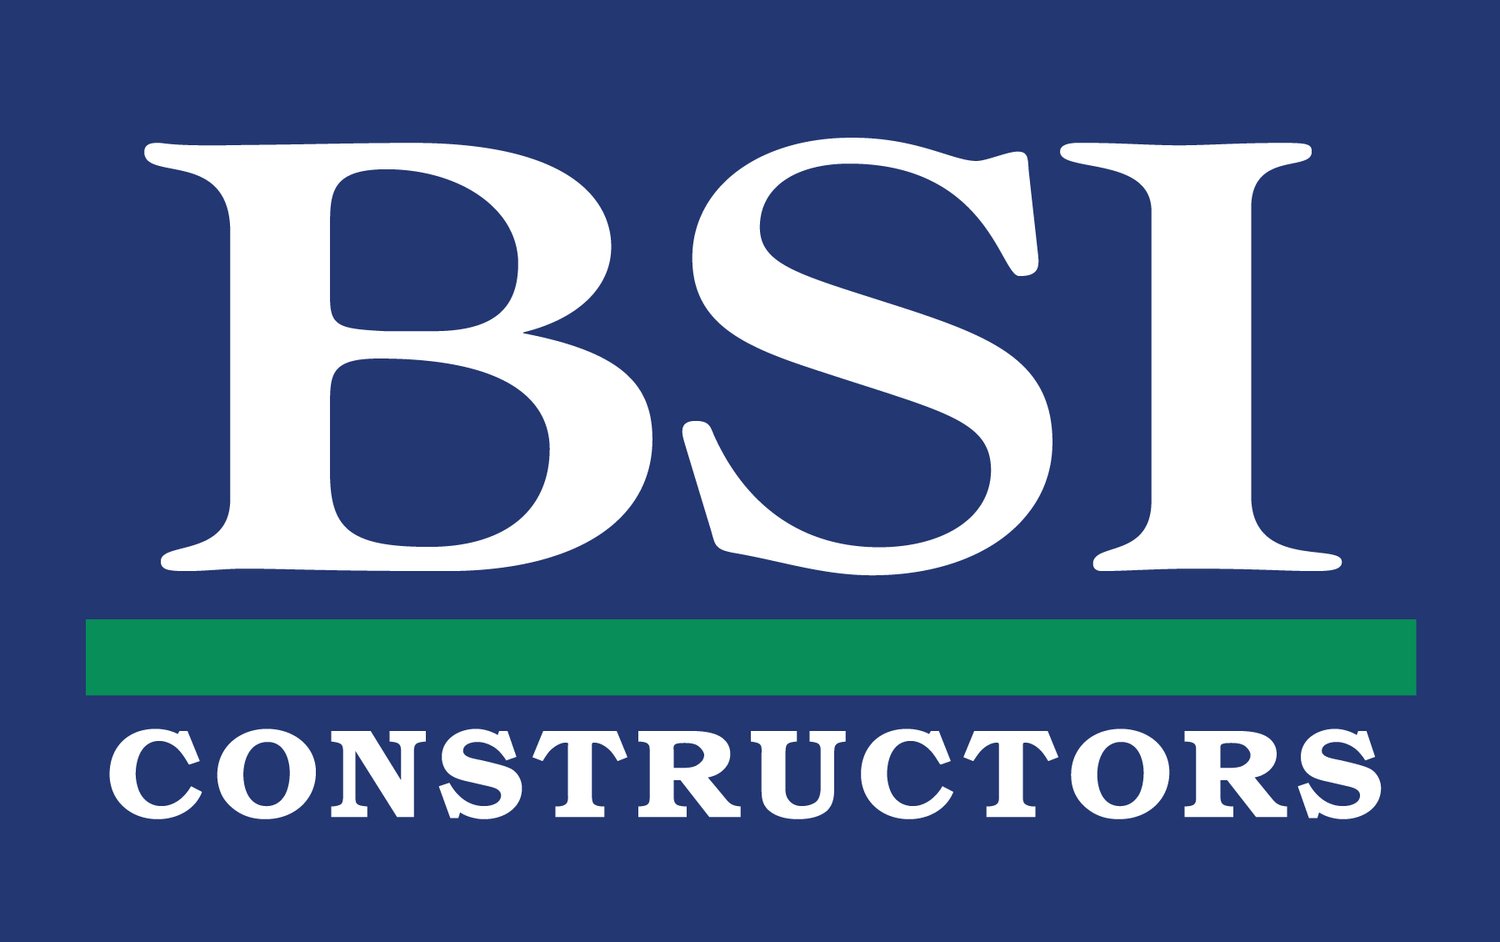 BSI Constructors